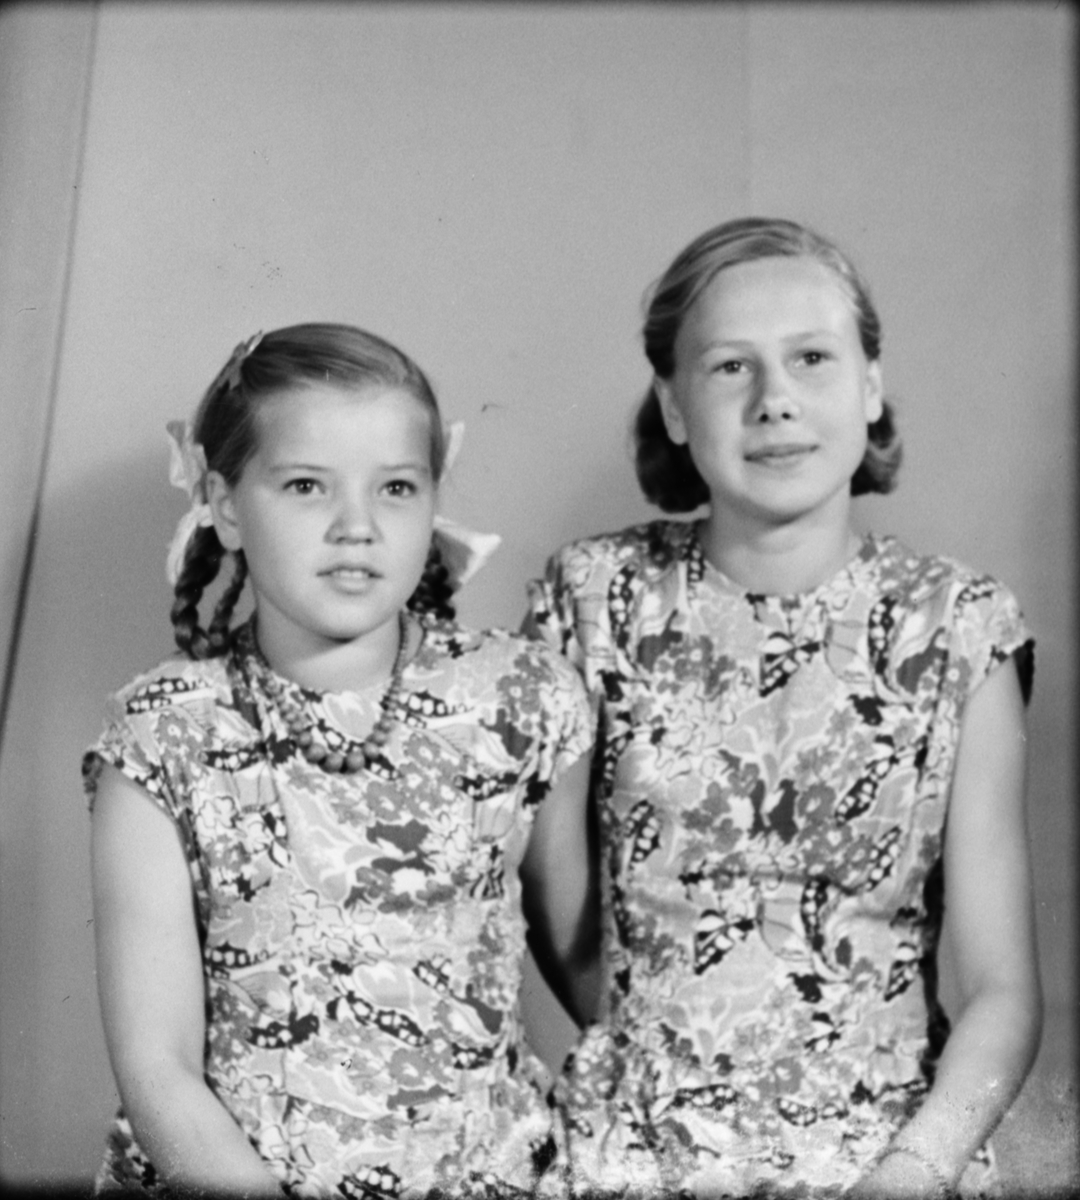 Systrarna Jansson från Marma, Alunda socken, Uppland 1948